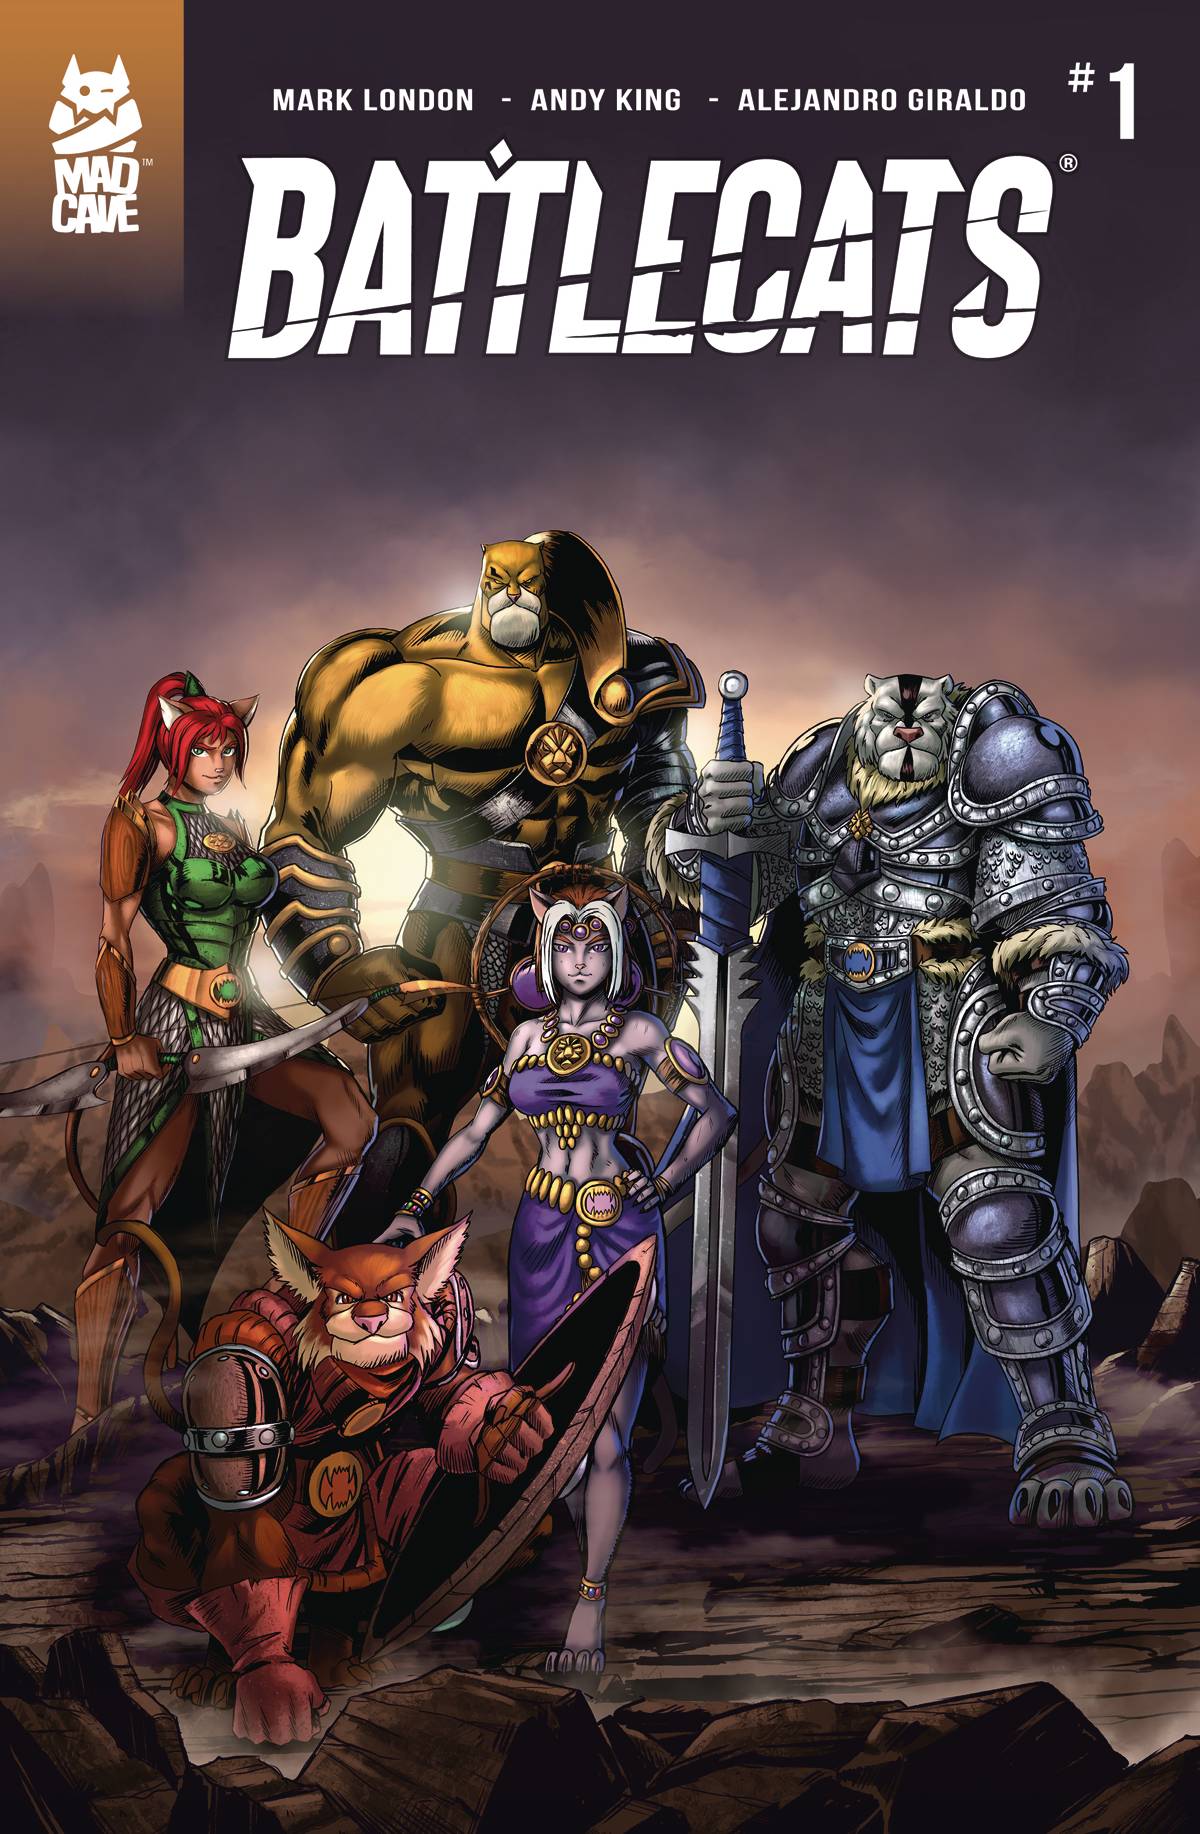 Battlecats 1 Comic Book